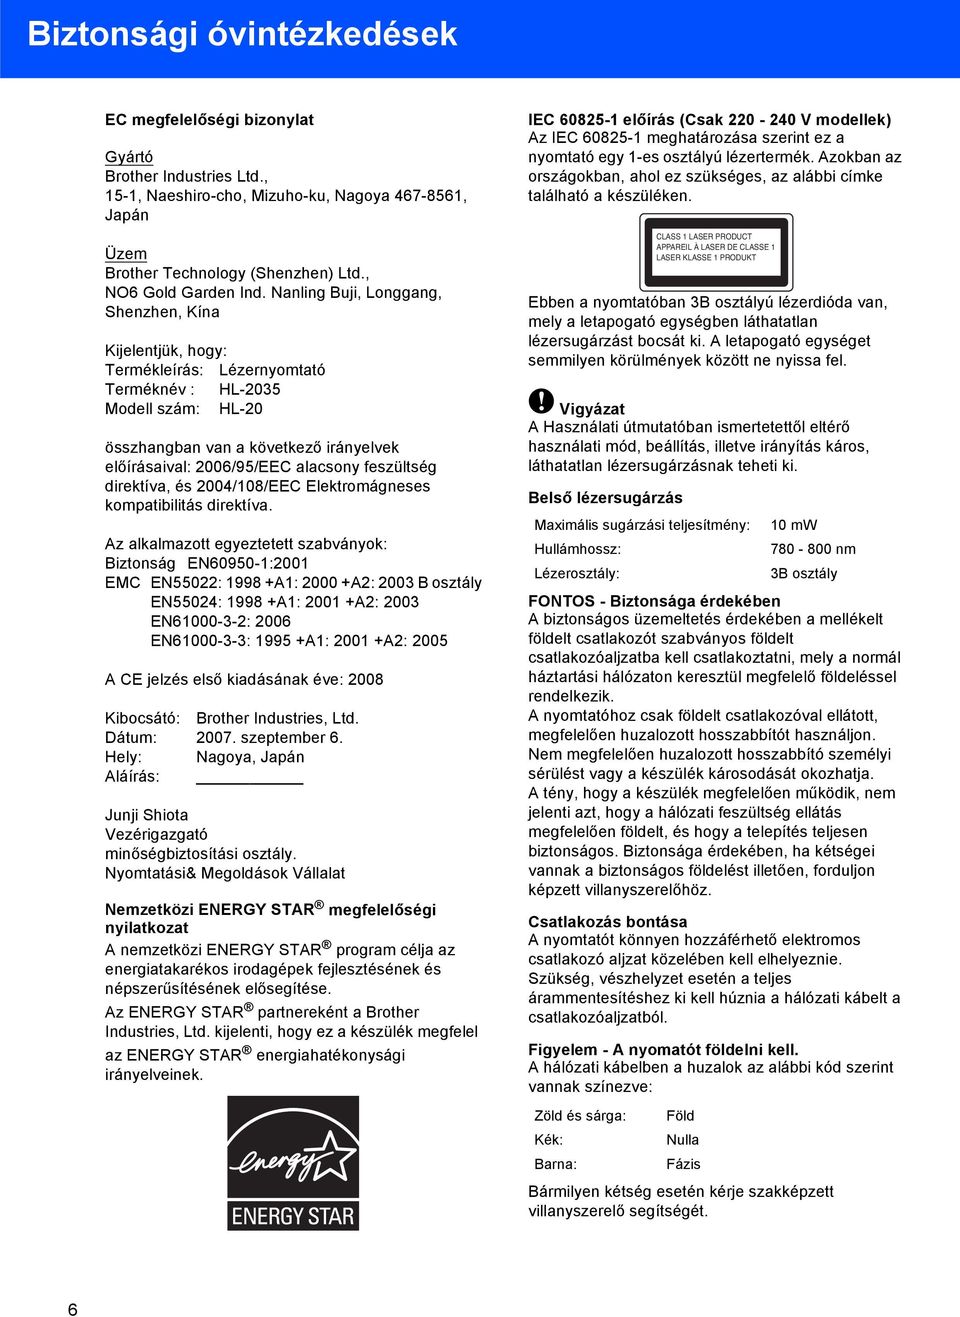 feszültség direktíva, és 2004/08/EEC Elektromágneses kompatibilitás direktíva.